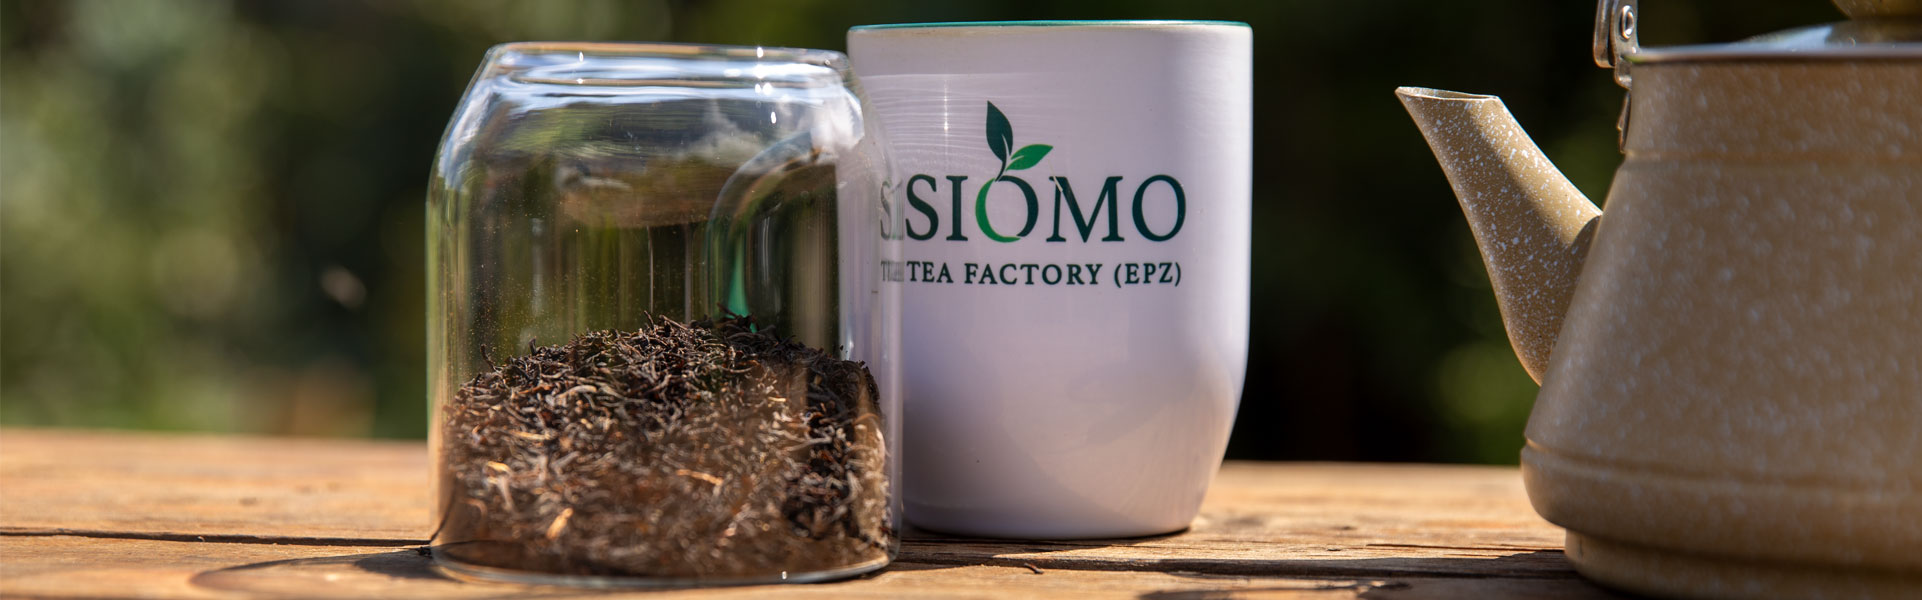 Siomo Tea Factory EPZ